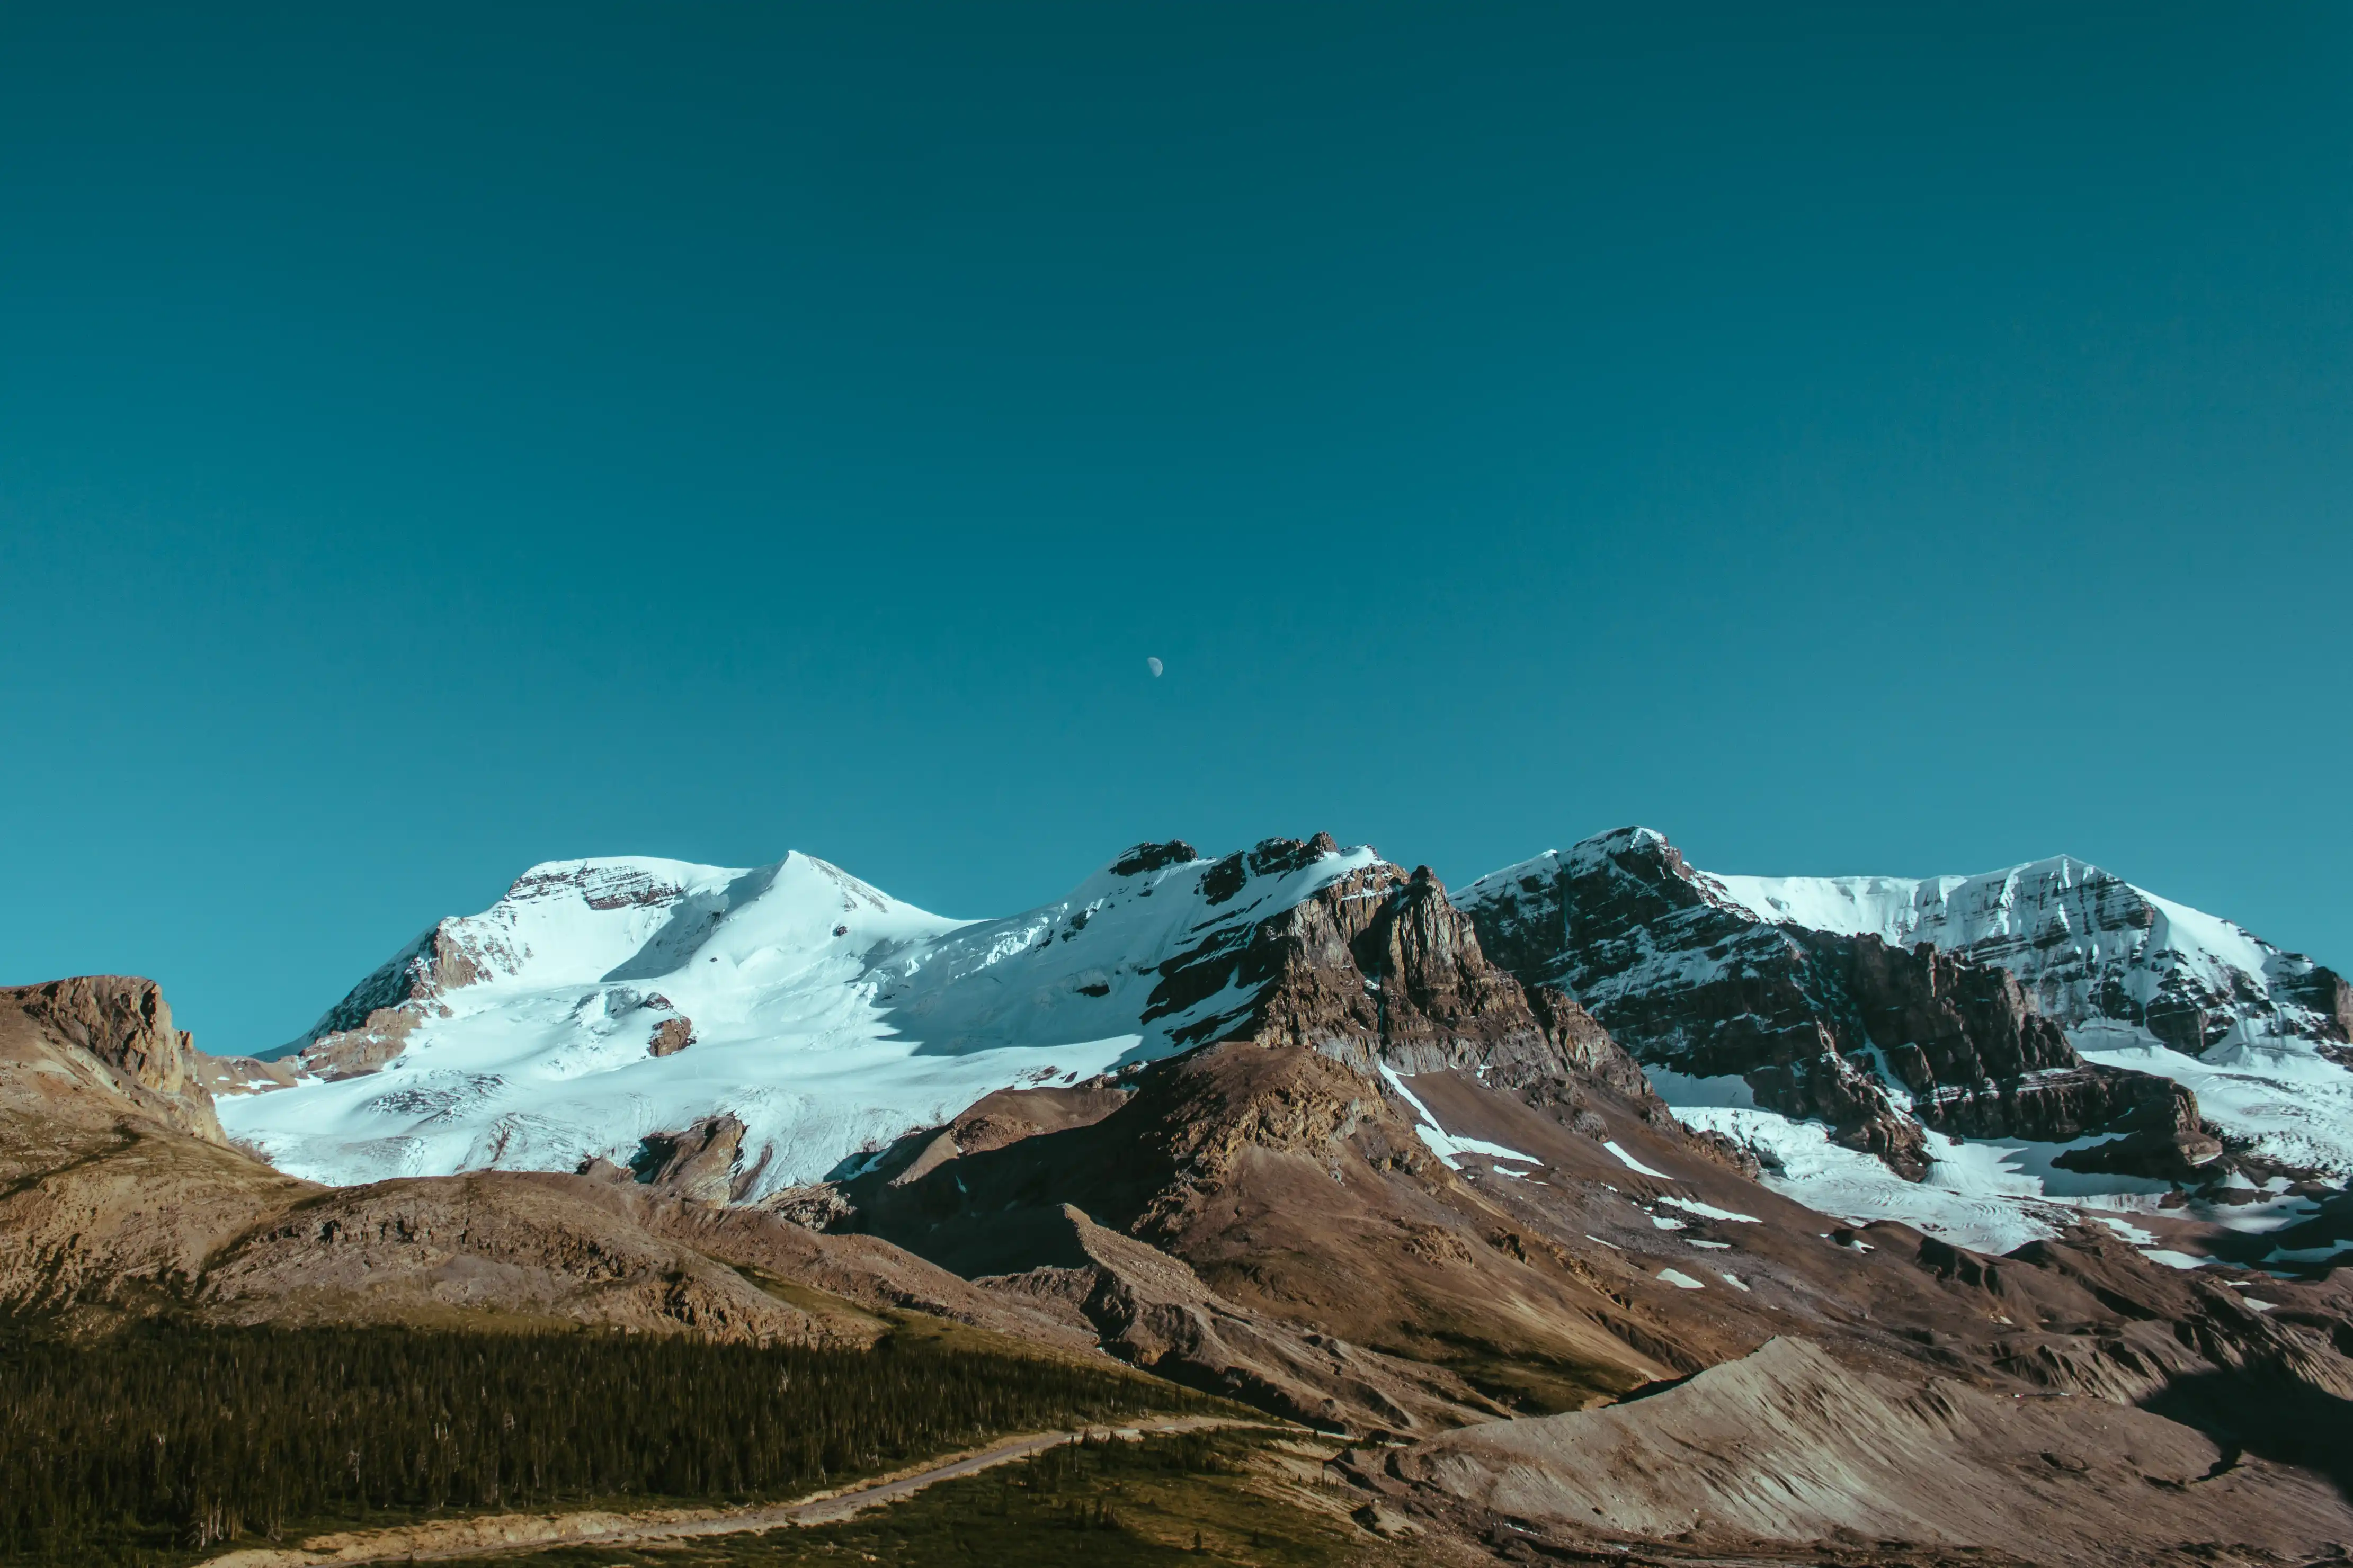 Alpine mountains under a clear sky by Ryan Schroeder